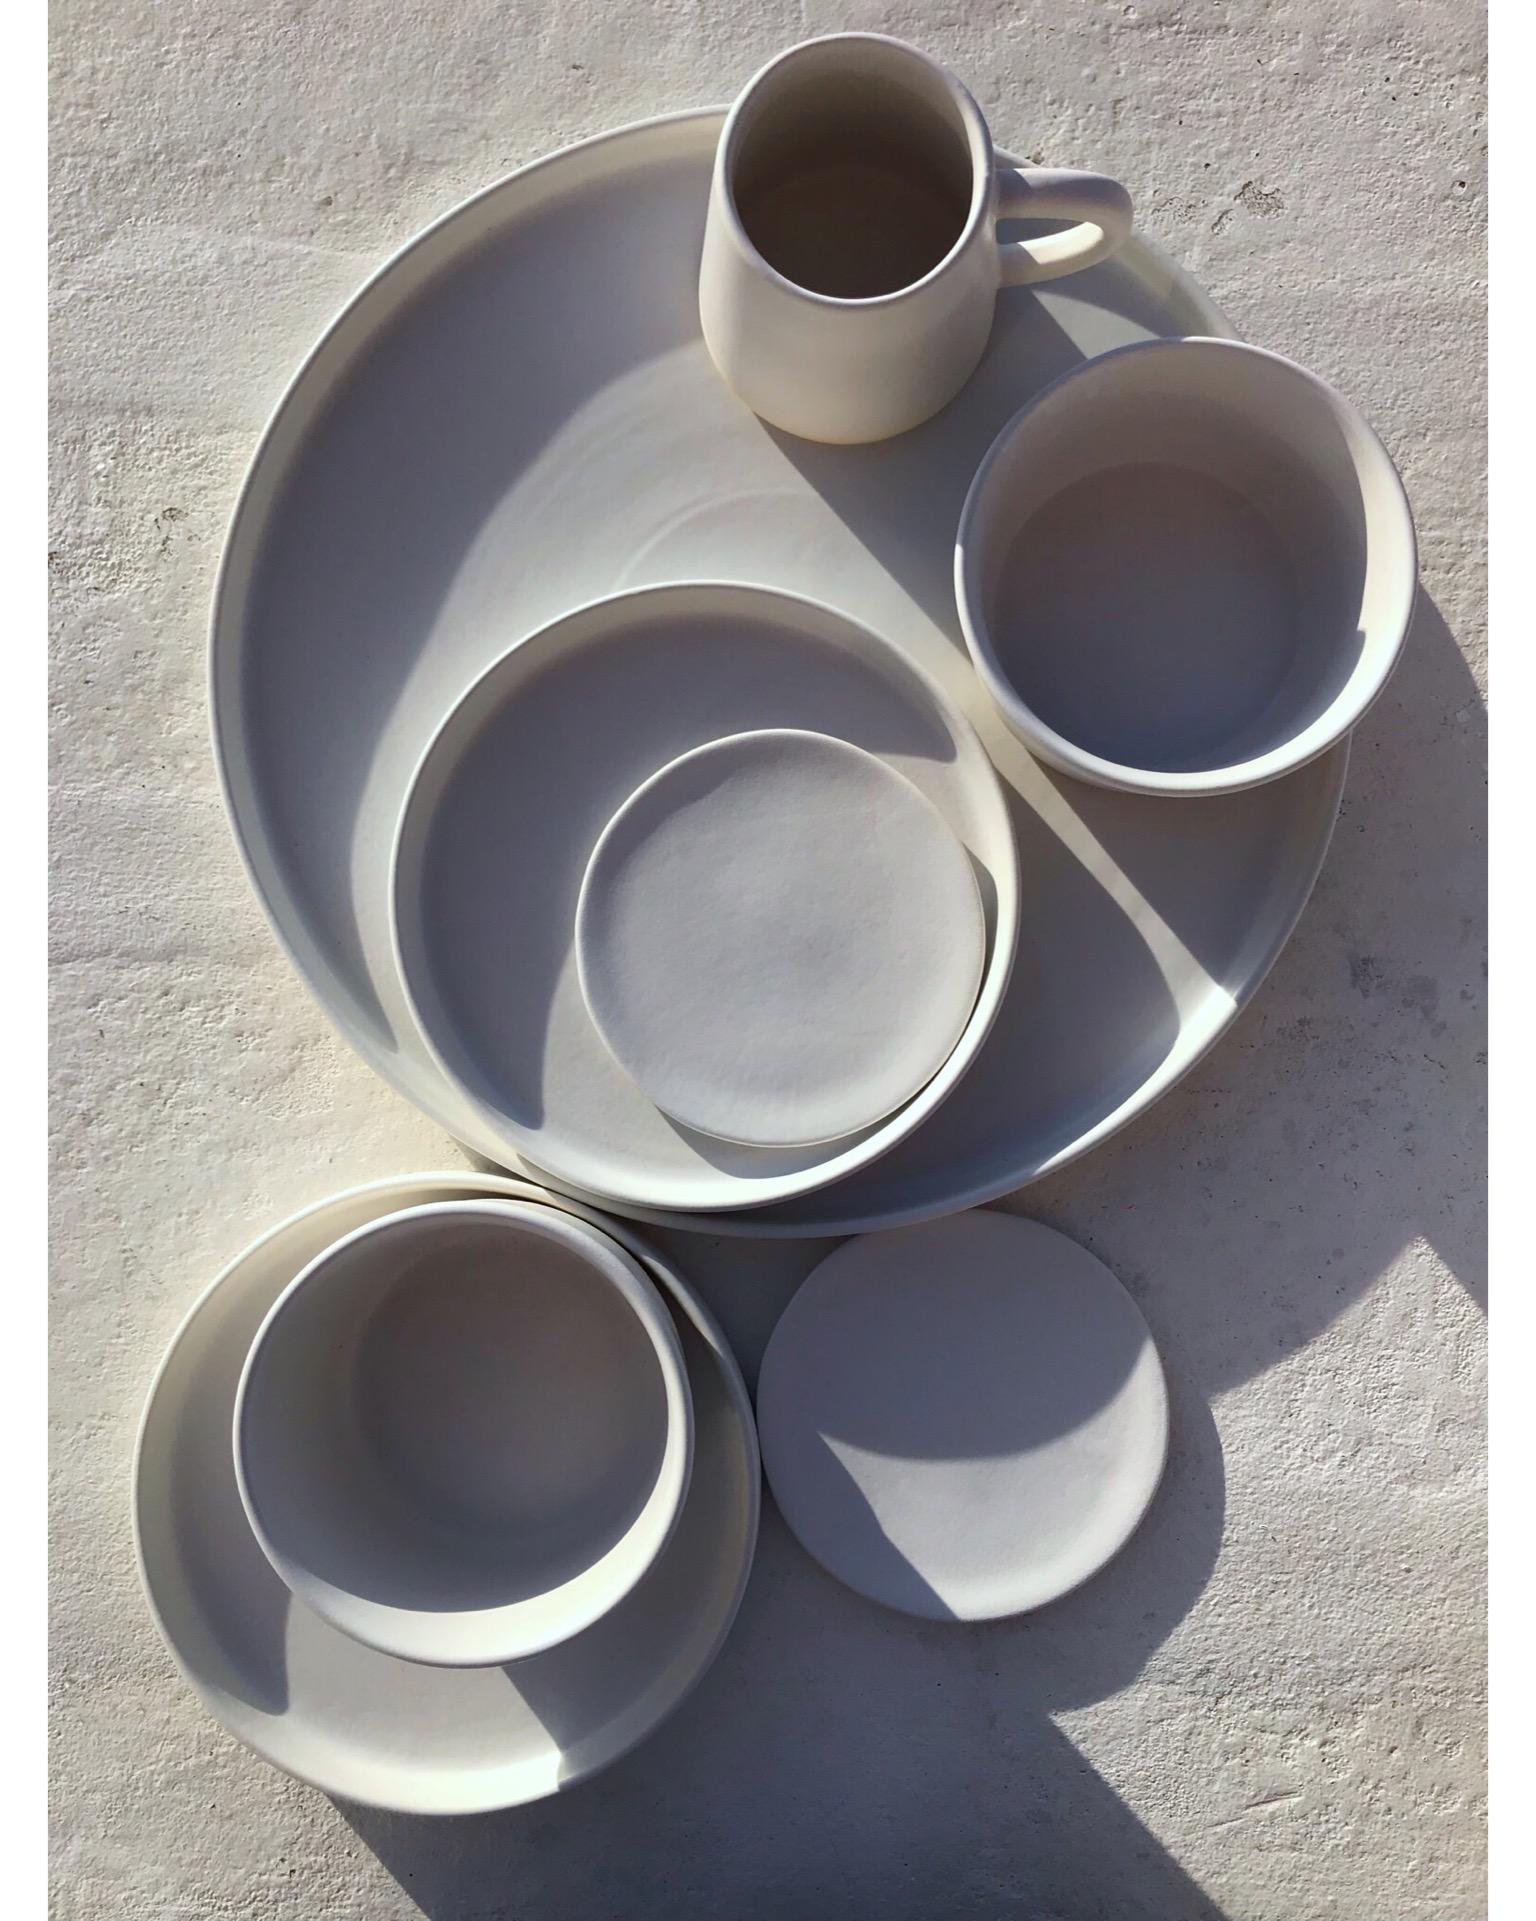 Diese handgefertigten und handbemalten Keramiken aus einem der Mutterländer, Portugal, verleihen Ihrem Tisch einen modernen Touch und sind perfekt zu kombinieren. Diese Schale gibt es in schwarz oder weiß und in zwei verschiedenen Größen:

Kleine